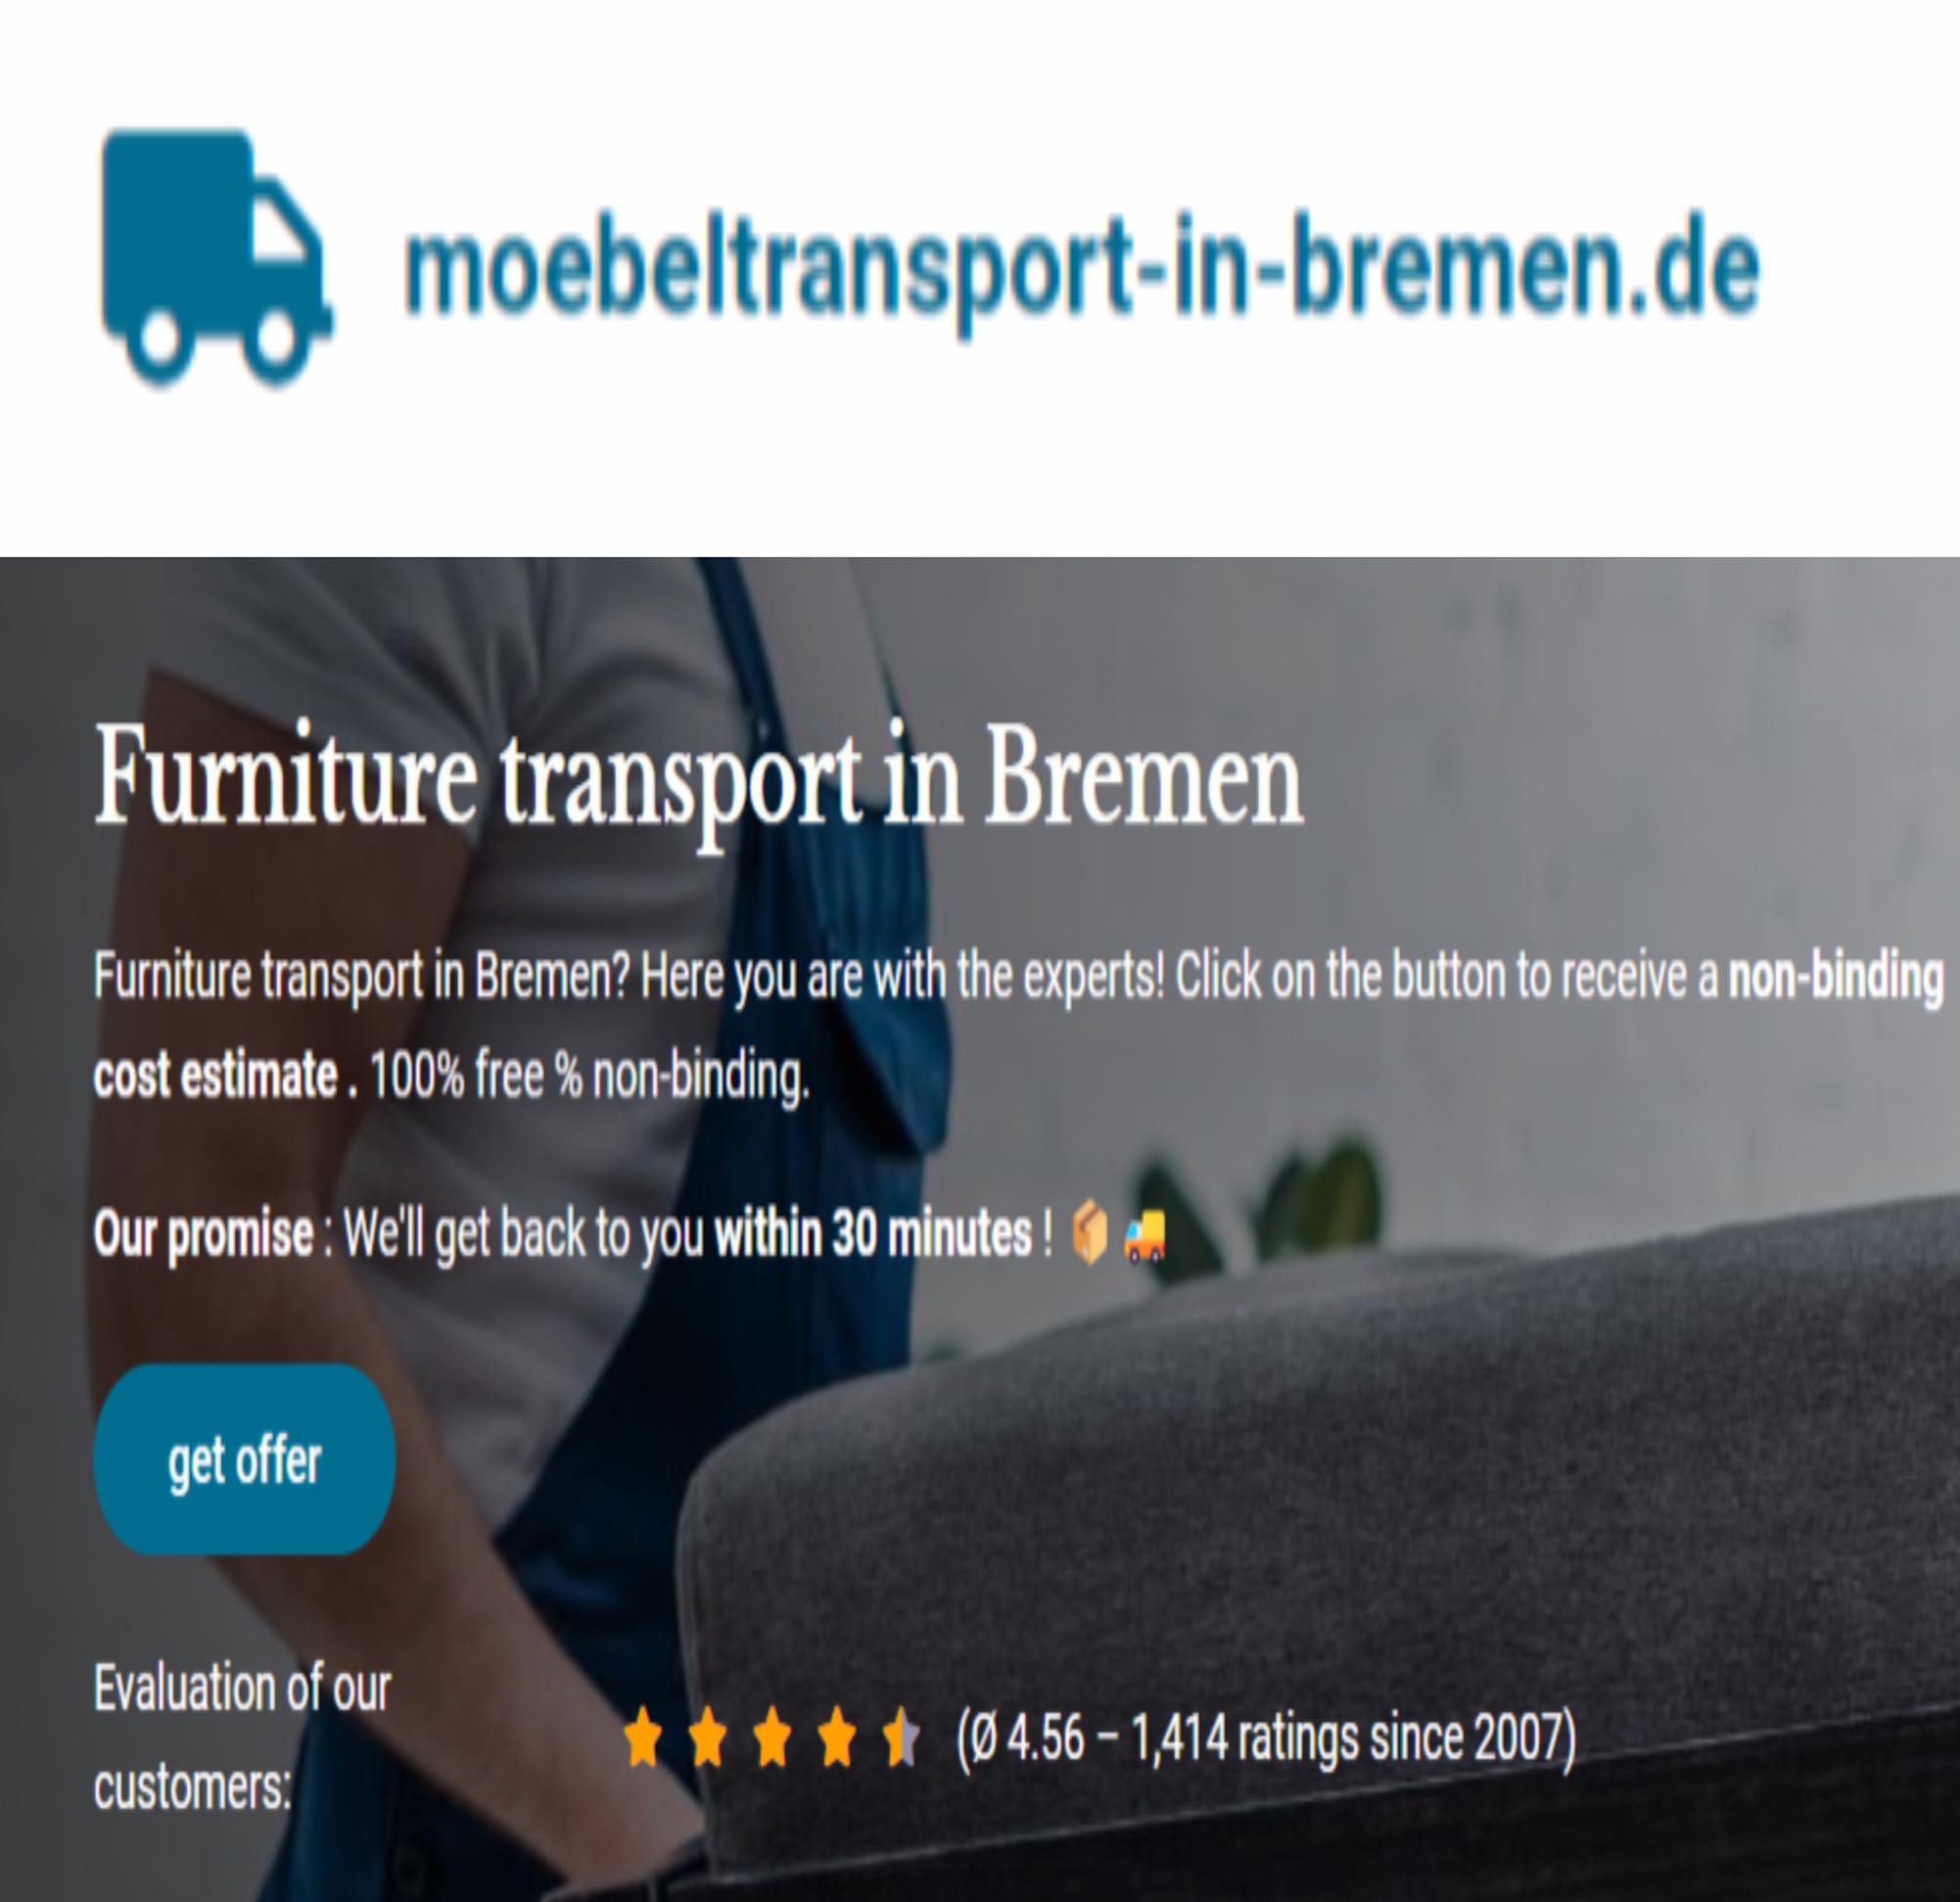 moebeltransport-in-bremen.de